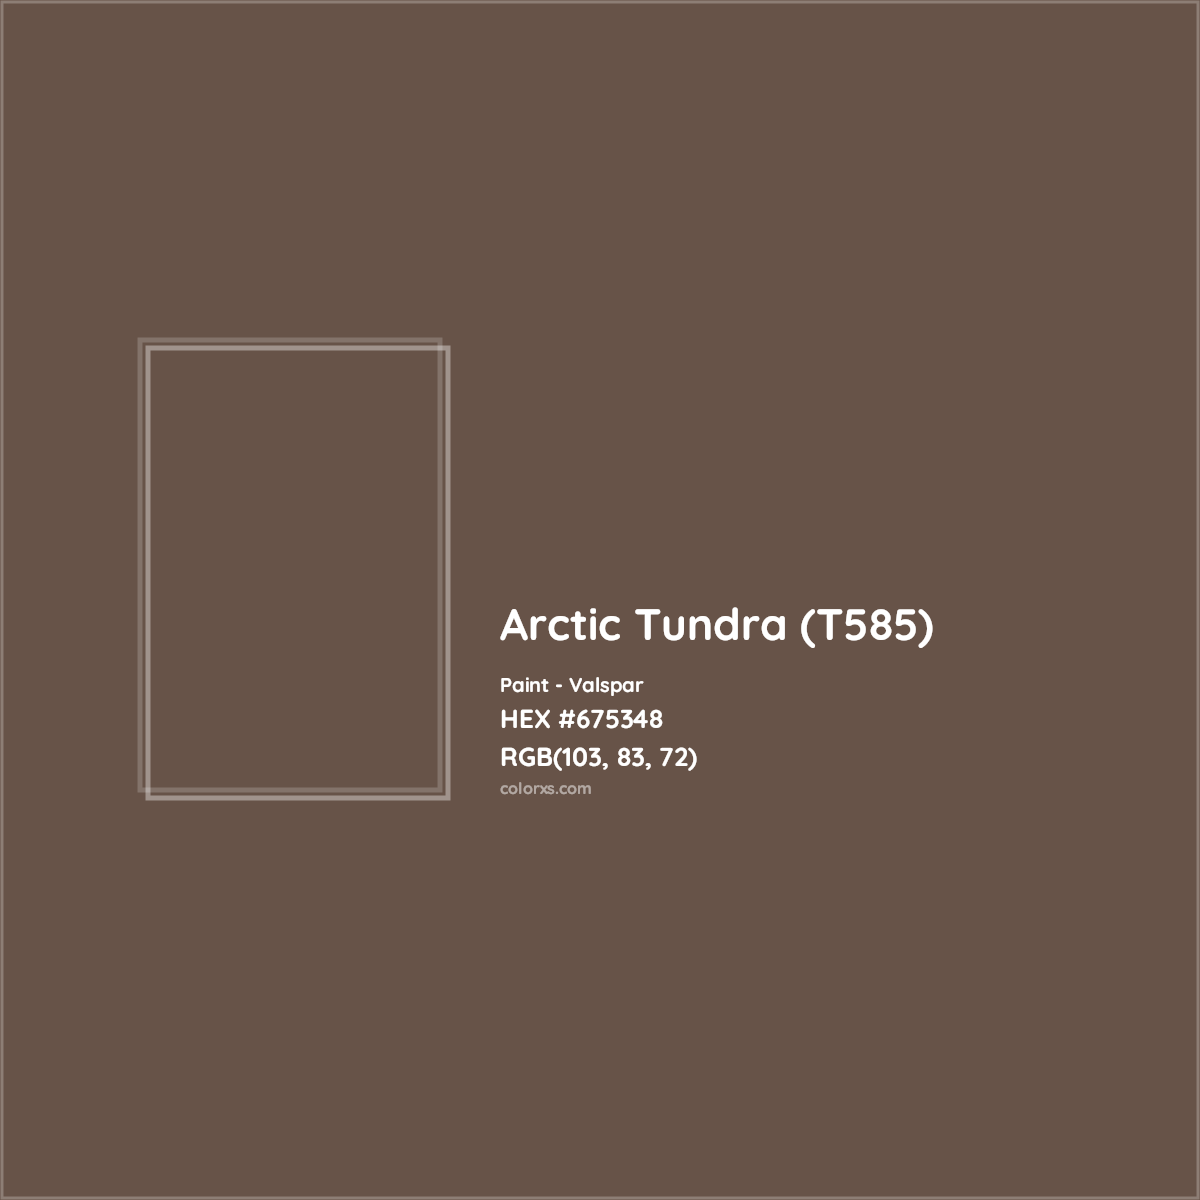 HEX #675348 Arctic Tundra (T585) Paint Valspar - Color Code